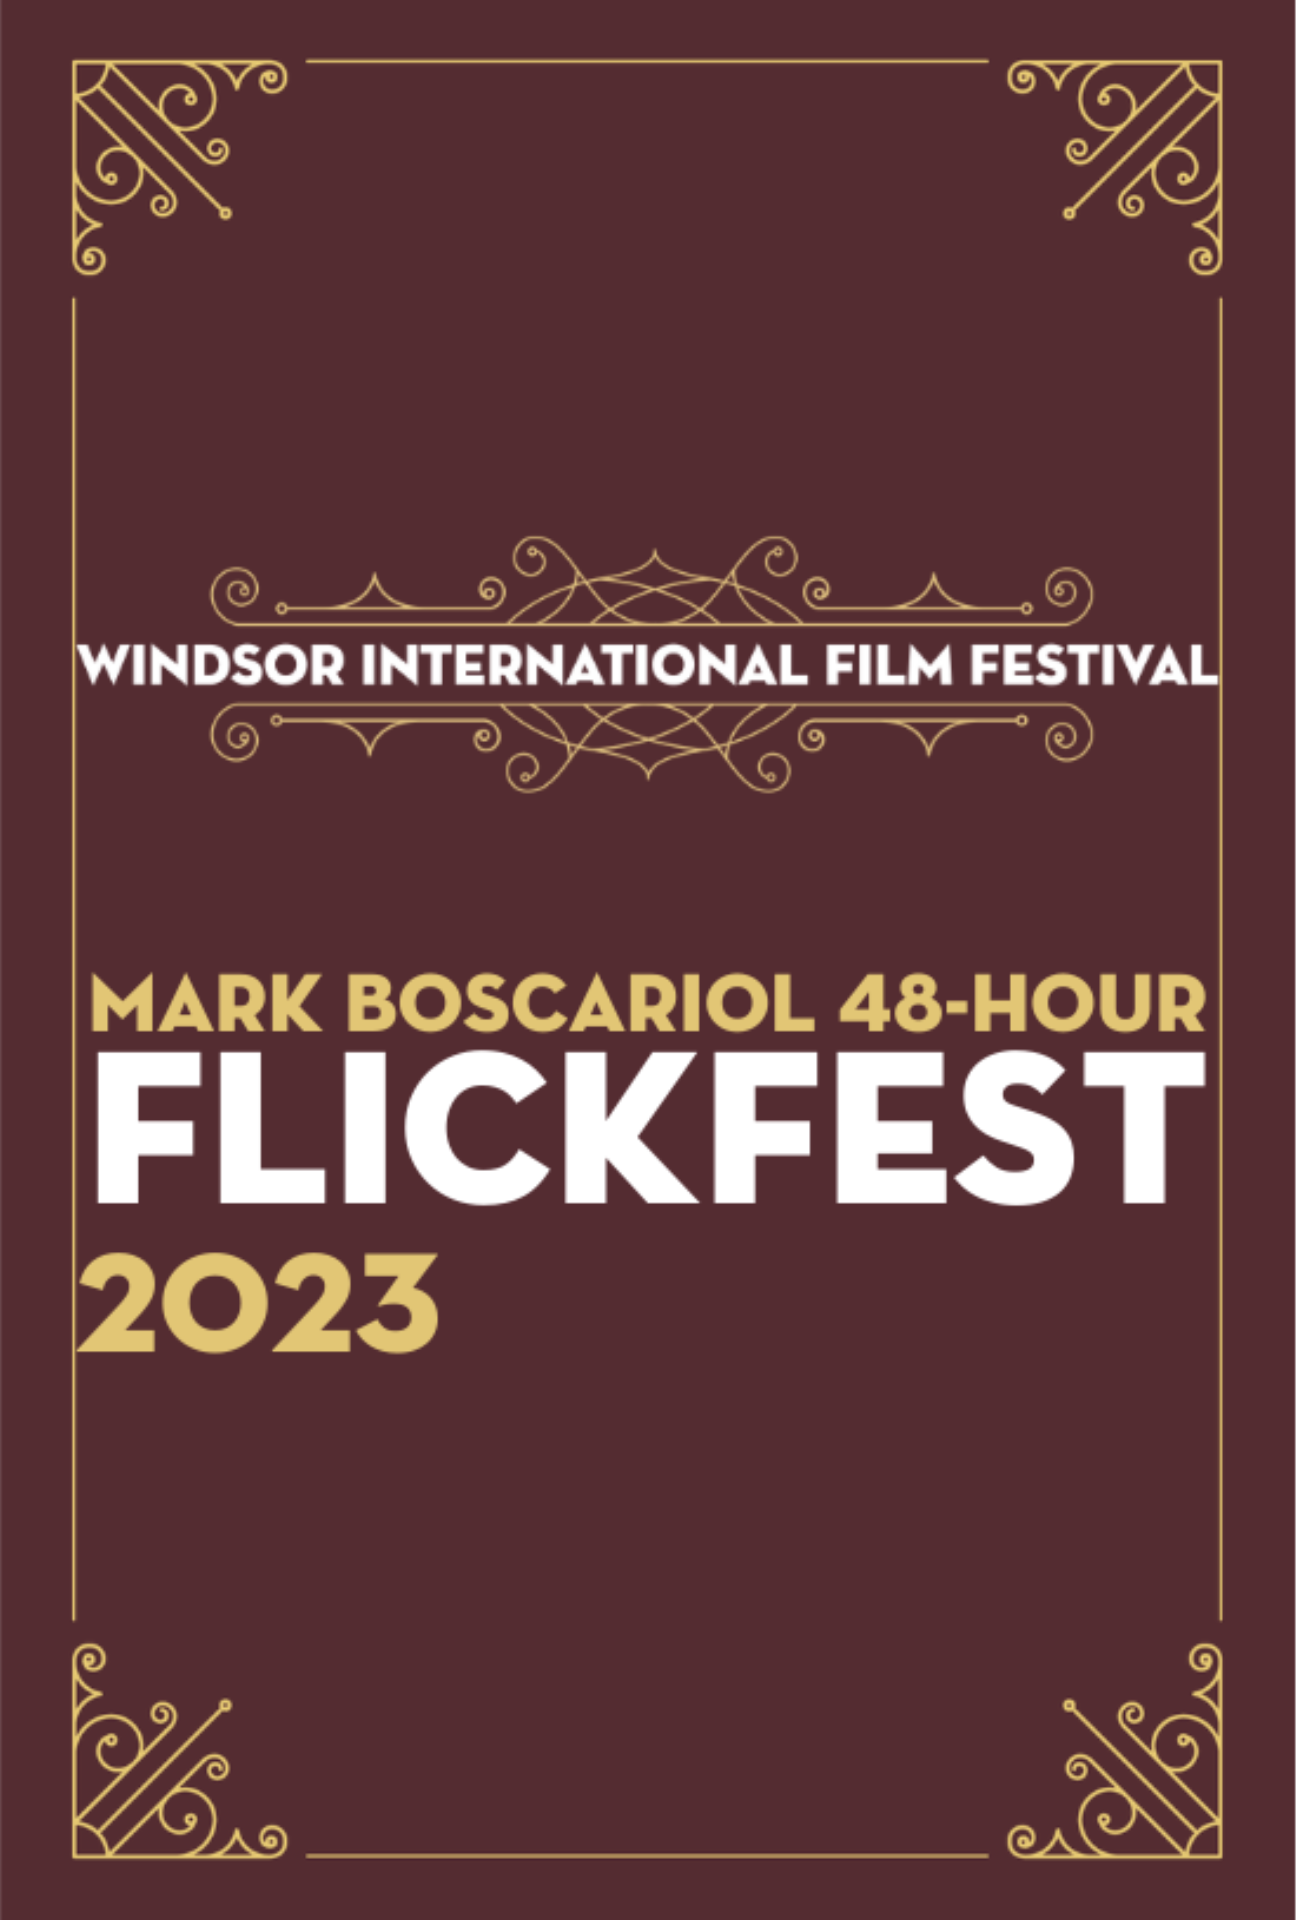 MARK BOSCARIOL 48-HOUR FLICKFEST 2023